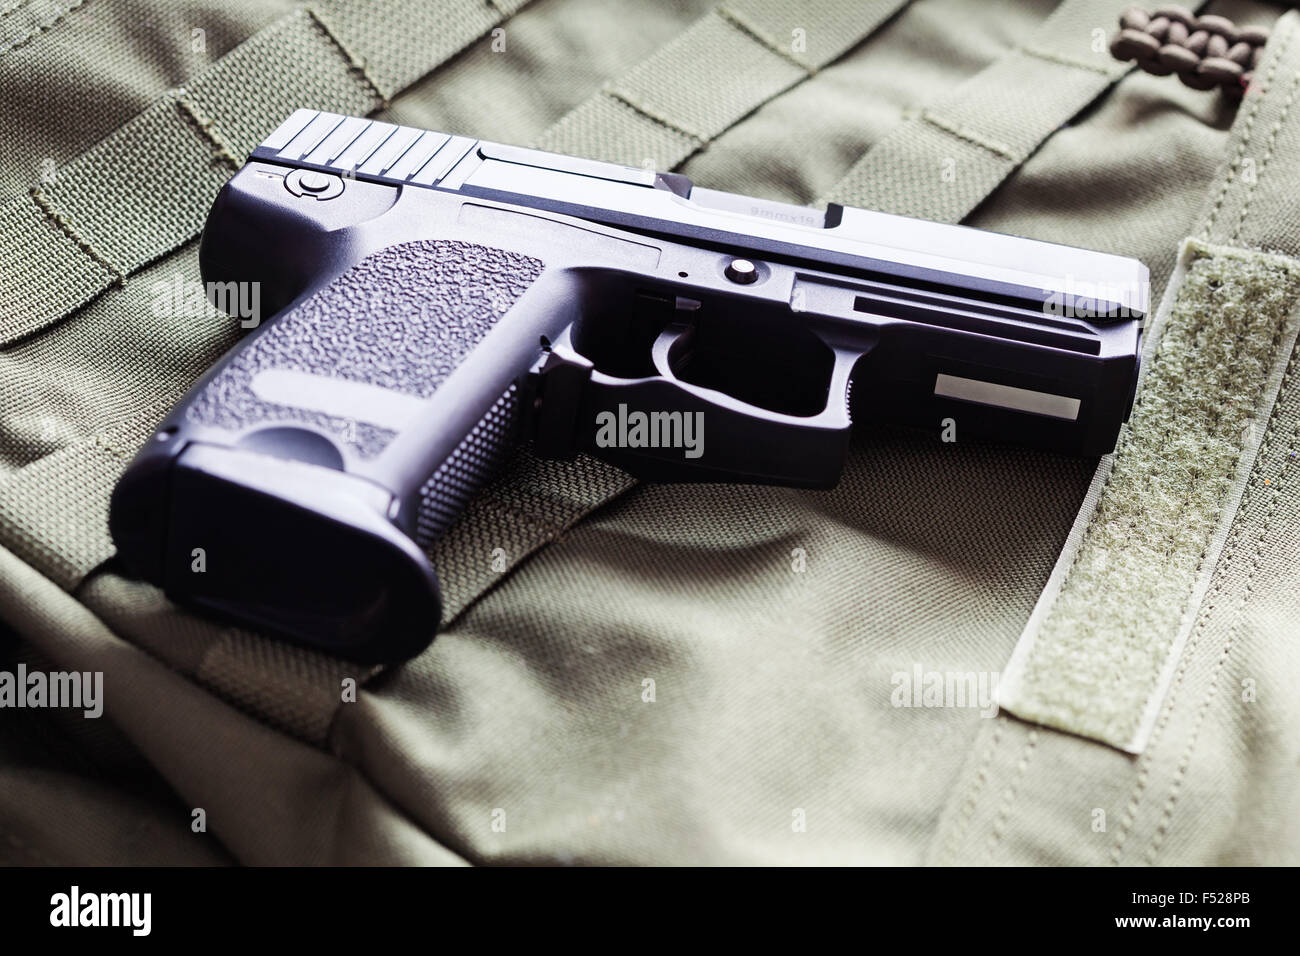 9mm x 19 pistola semi-automatica di close-up, studio shot Foto Stock